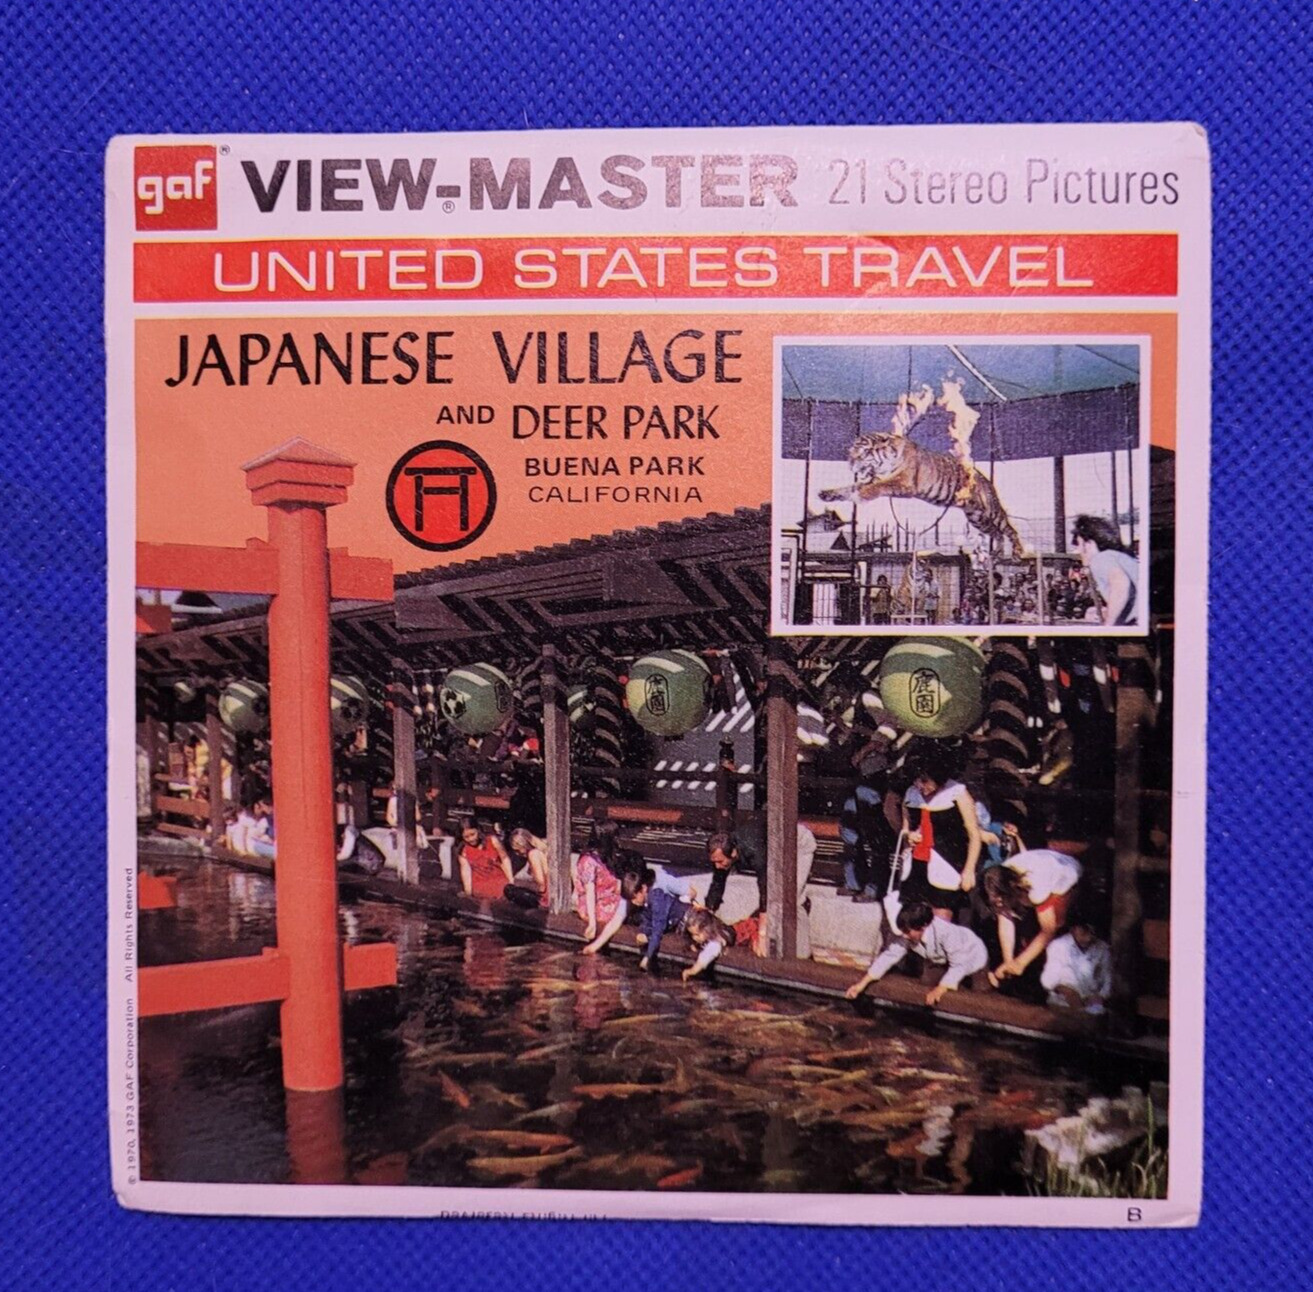 Vintage US Travel Gaf A232 Japanese Village & Deer Park view-master Reels Packet